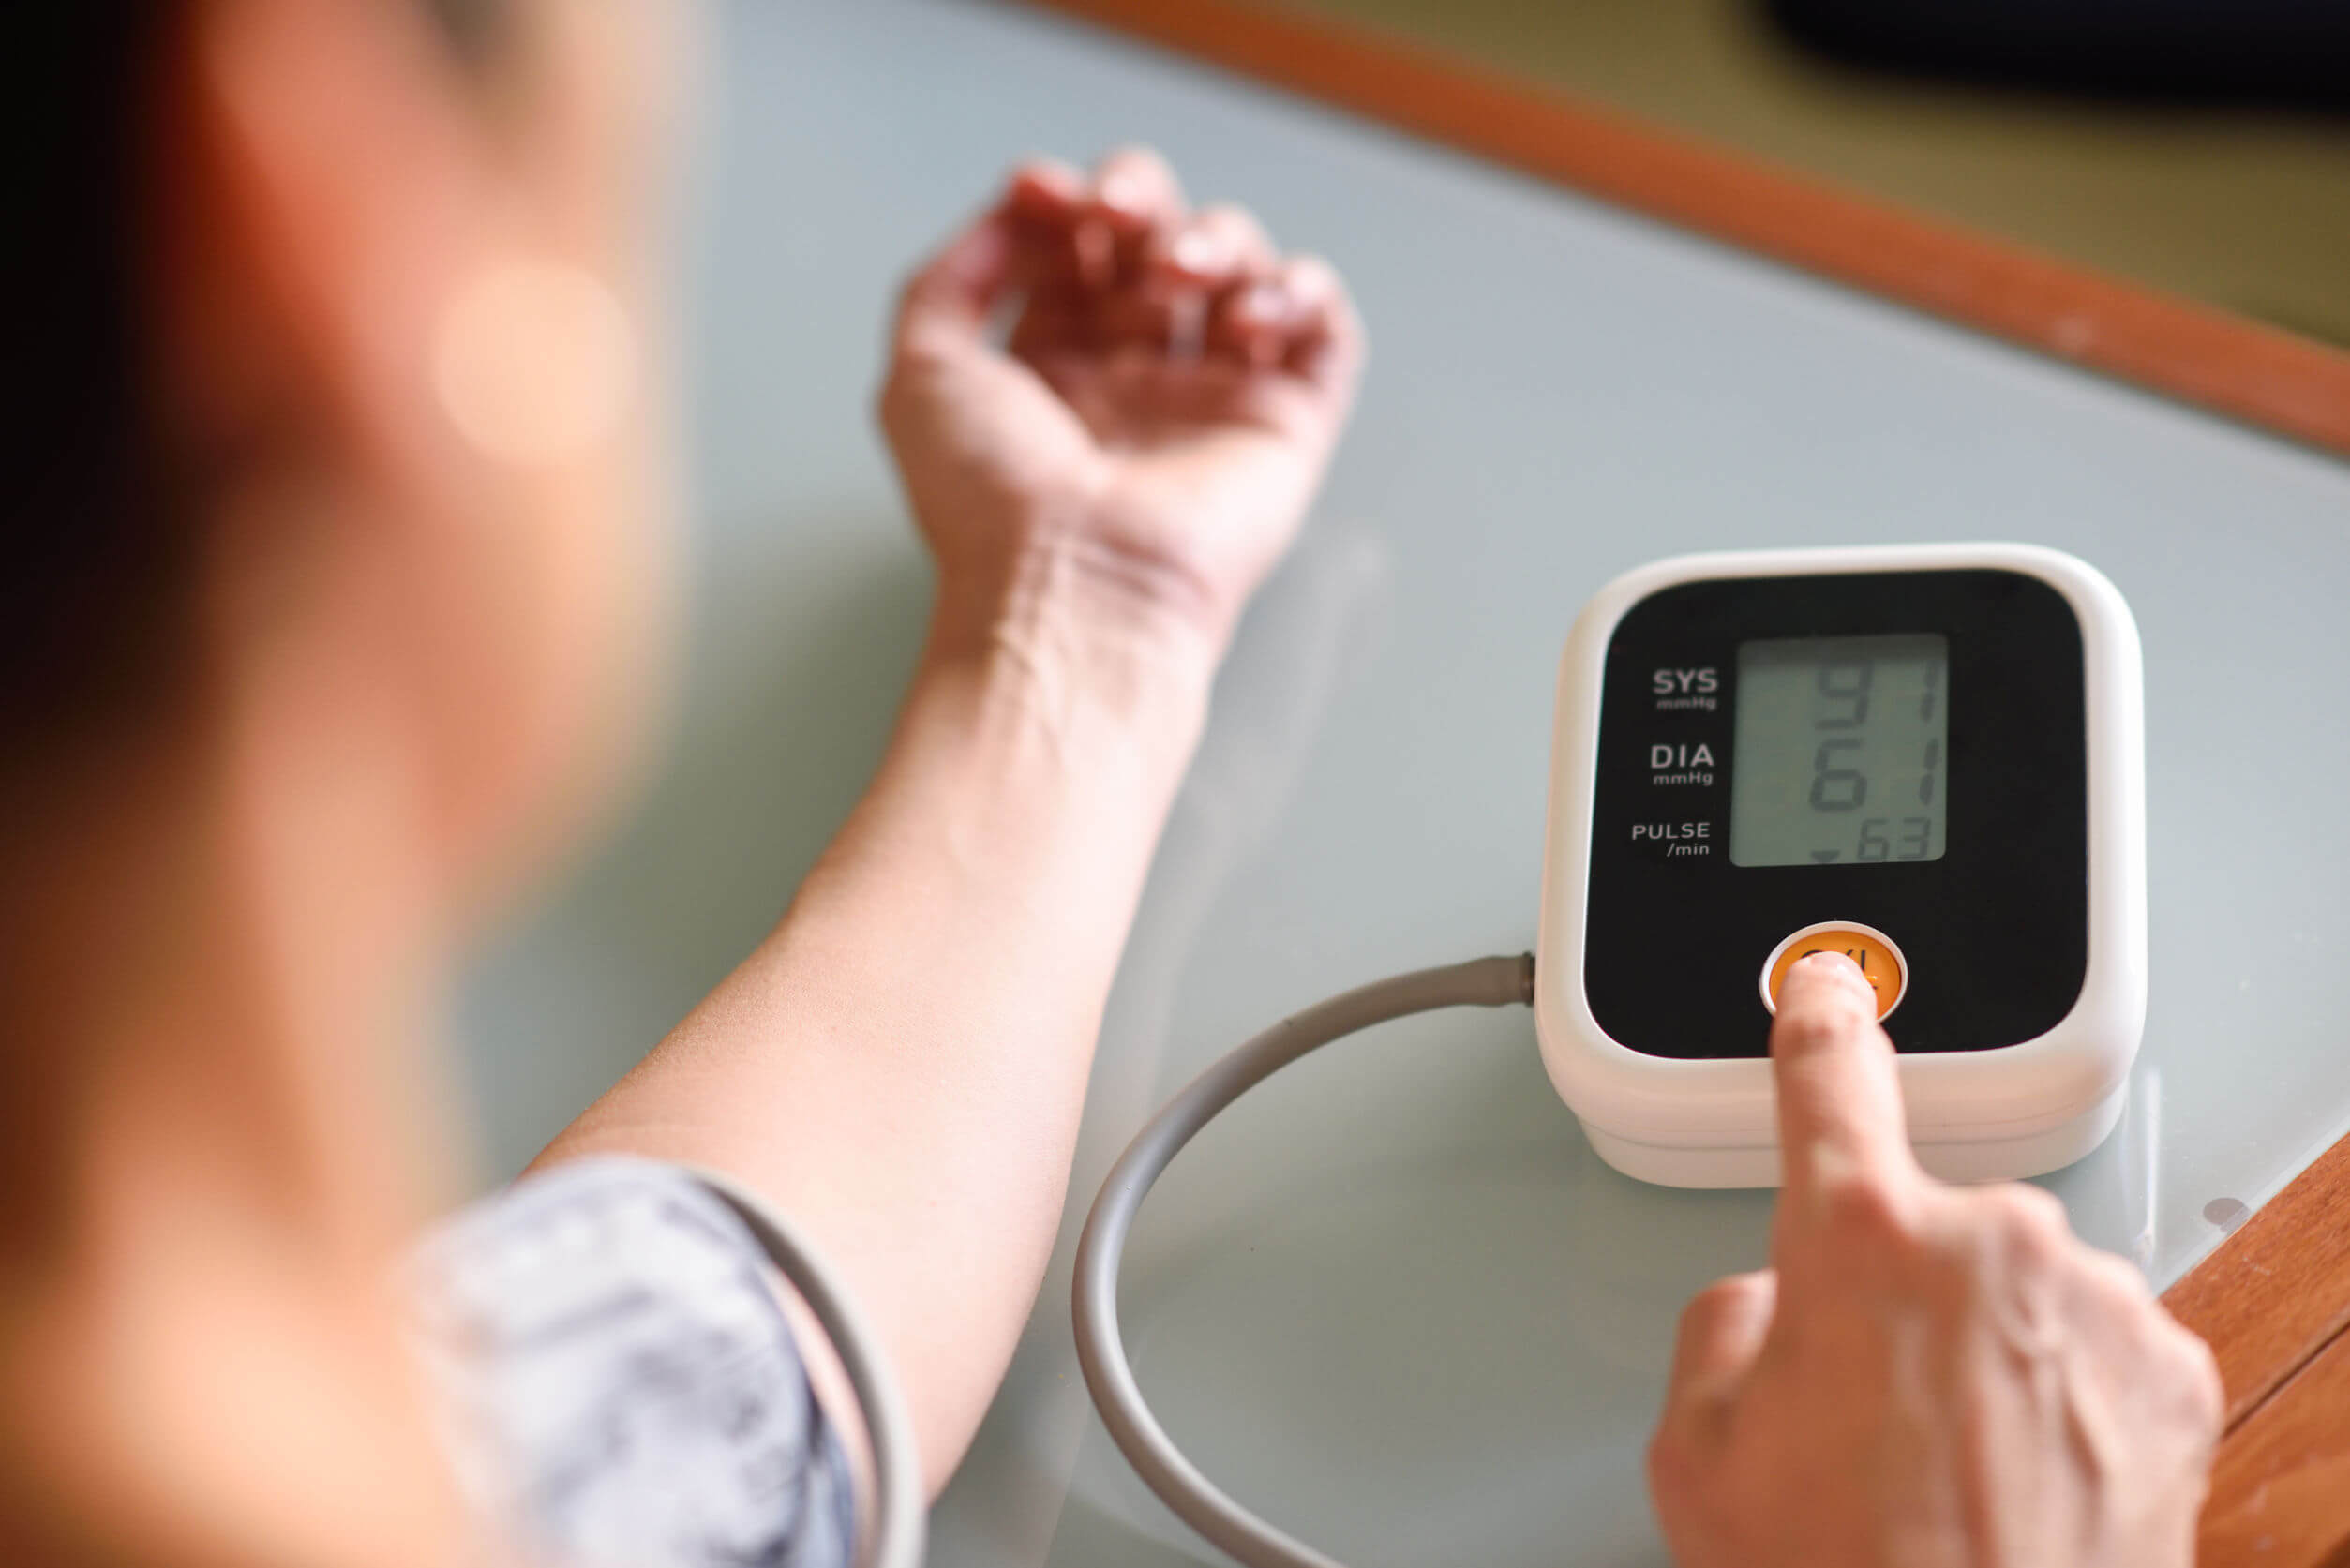 Prendere la pressione sanguigna a casa può diagnosticare l'ipertensione